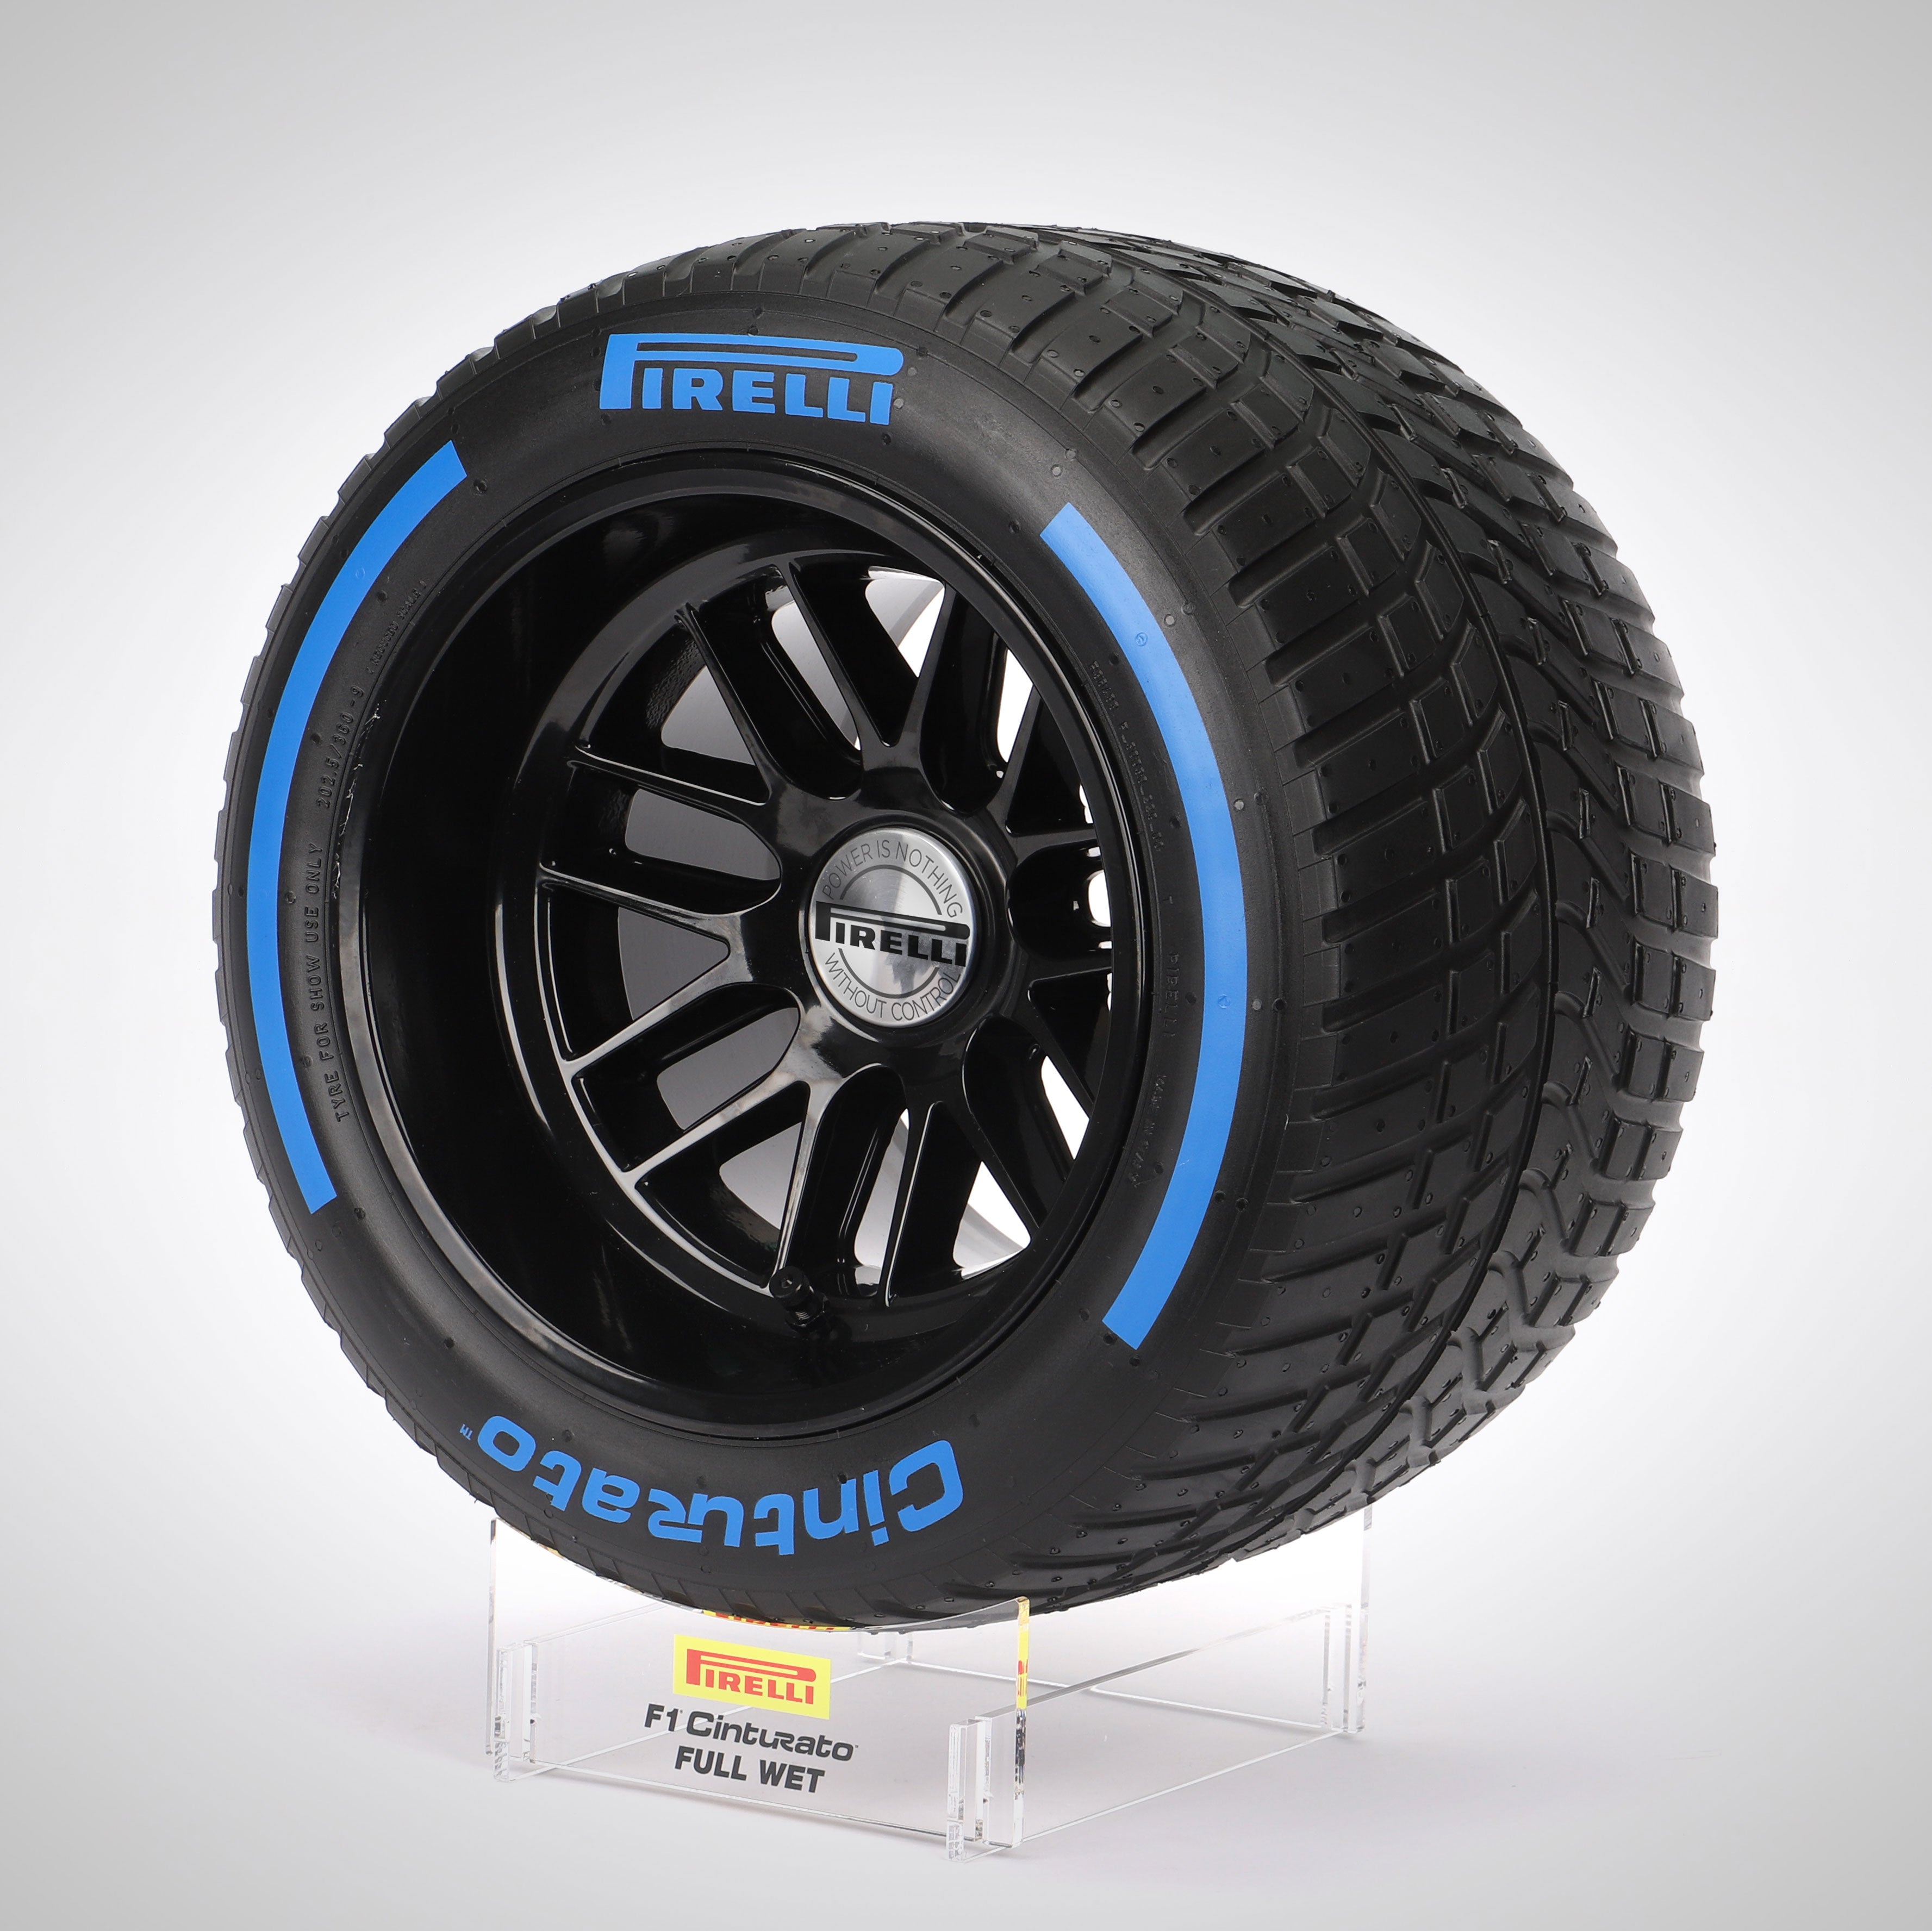 Pirelli Wind Tunnel Tyre - Blue Wet Compound